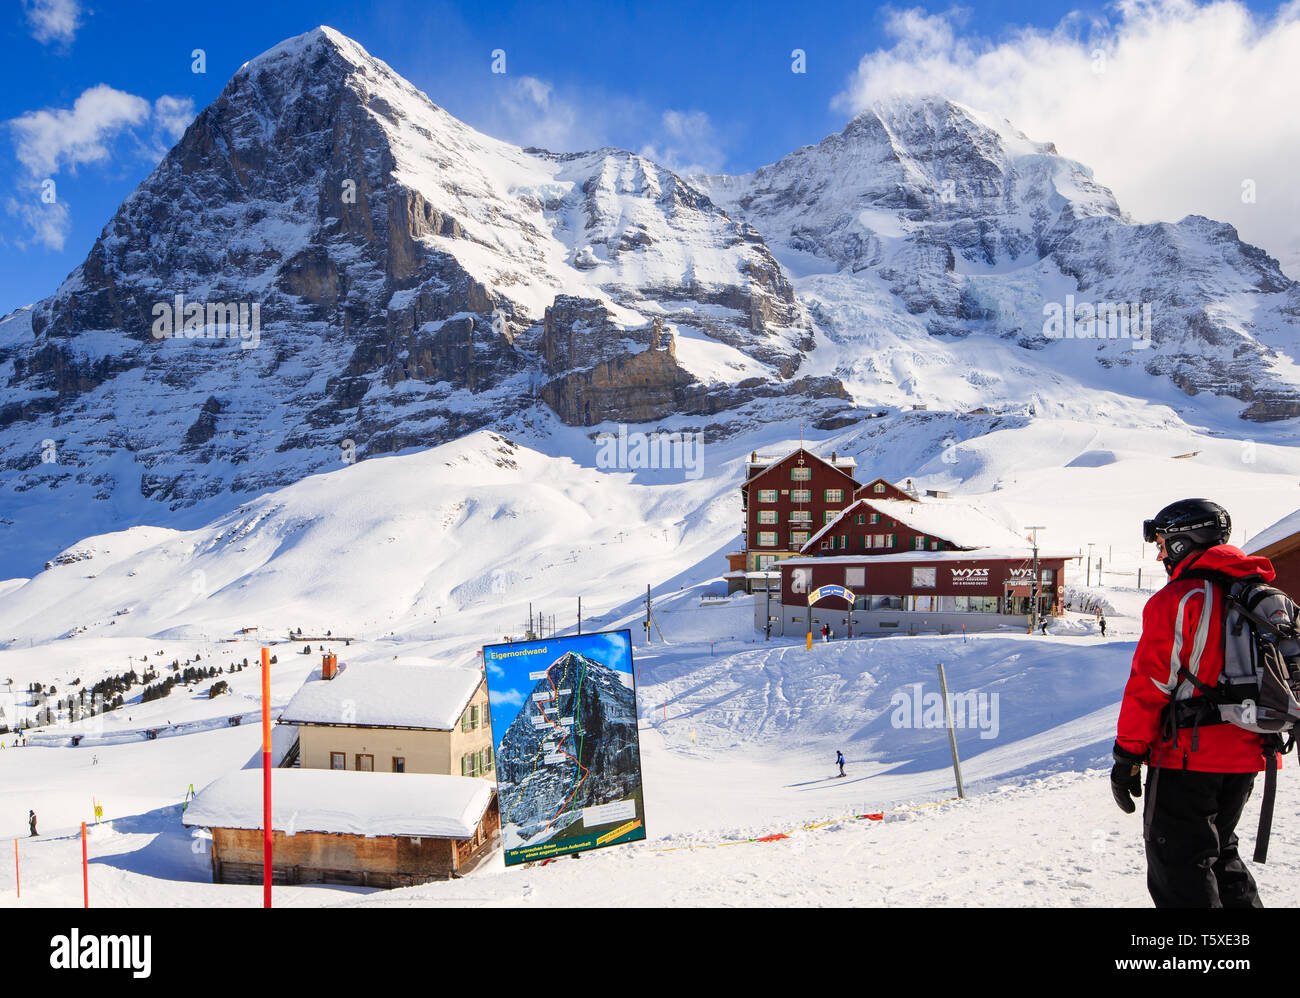 À la recherche de skieurs à signer avec face nord de l'Eiger derrière. Kleine Scheidegg, Oberland Bernois, Suisse (Suisse) Banque D'Images